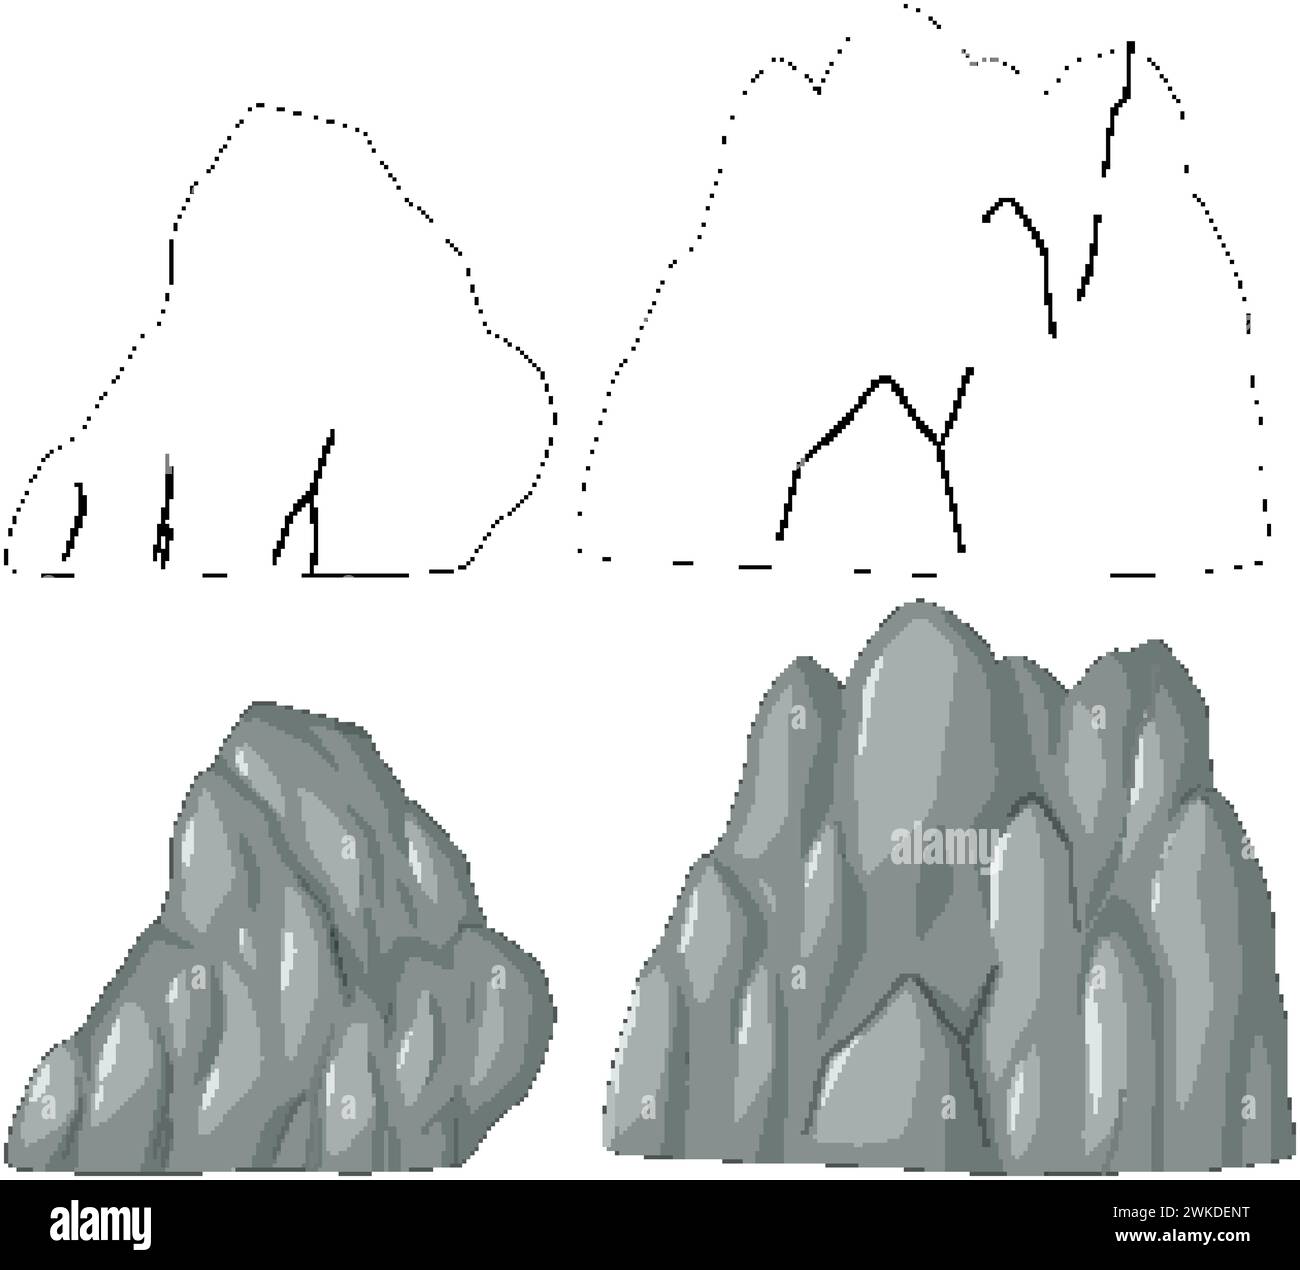 Formazioni rocciose semplici e ombreggiate in stile vettoriale Illustrazione Vettoriale